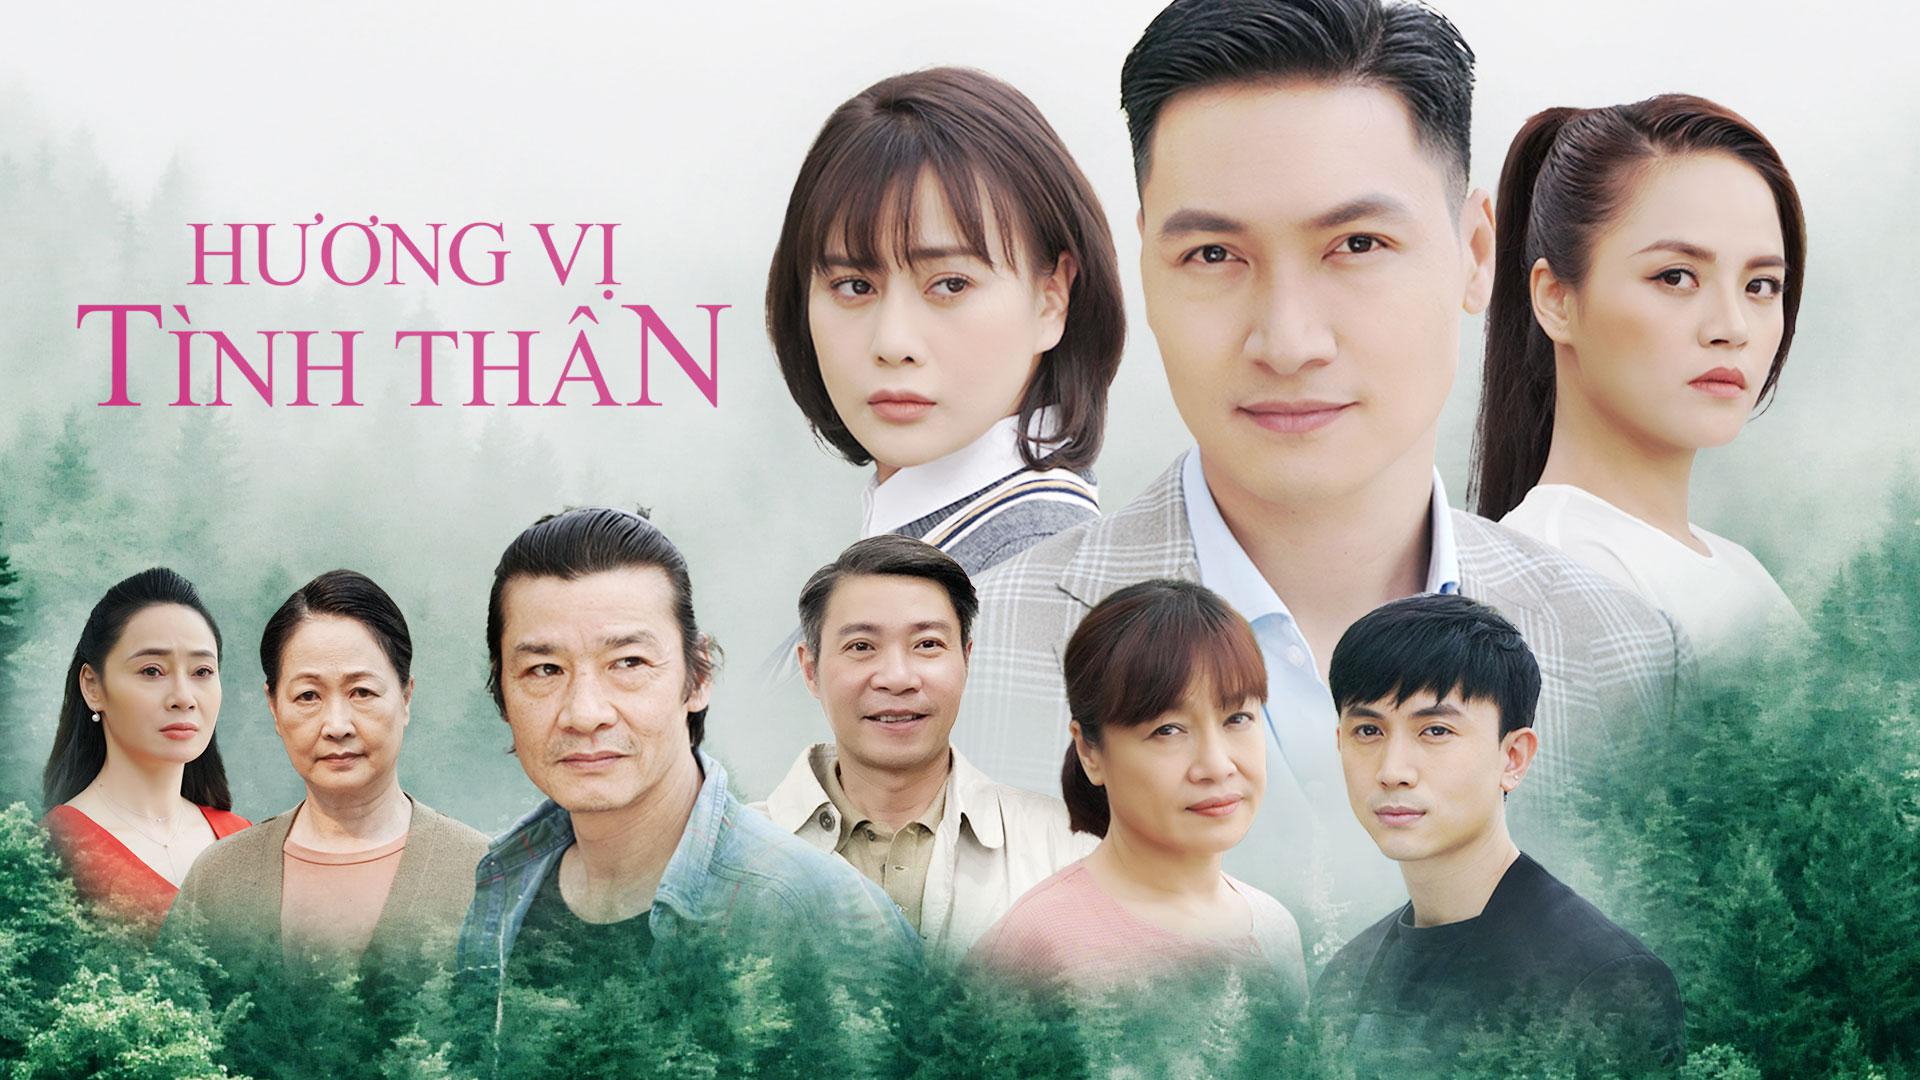 Sau 'Hương Vị Tình Thân', 1 bộ phim Hàn rắc rối, éo le hơn sẽ được Việt hóa - Ảnh 2